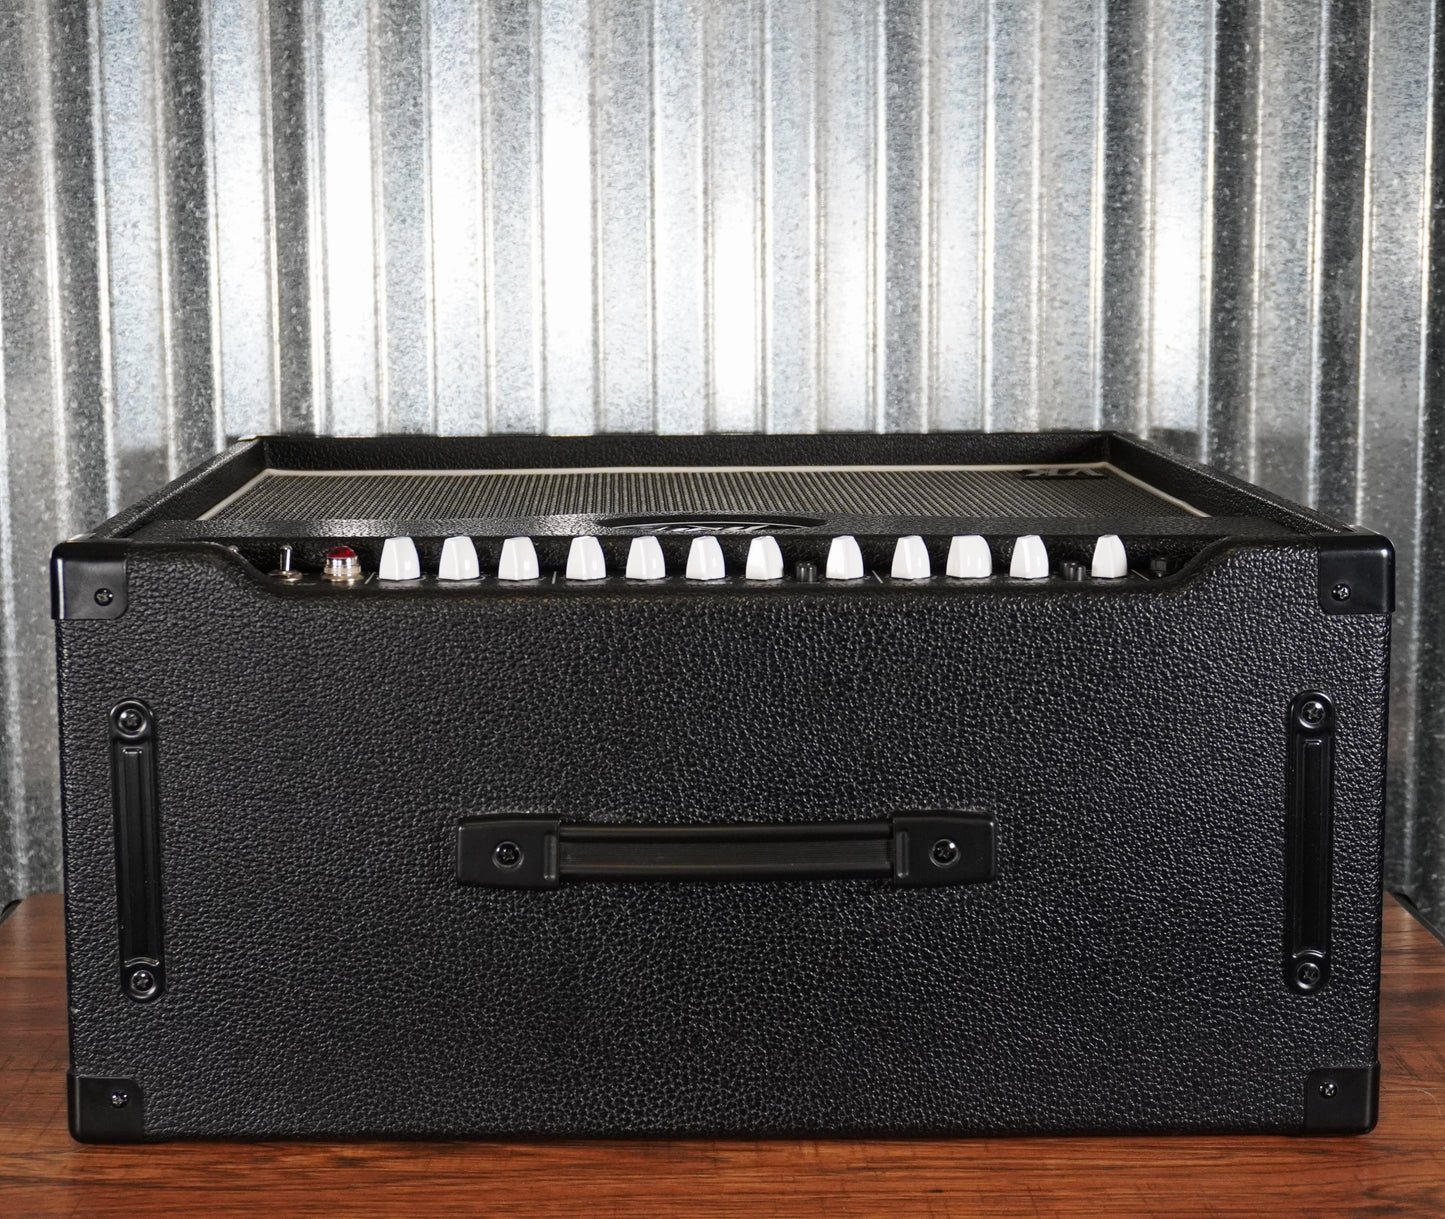 Peavey Valveking II 20 Celestion 1x12" 20 Watt Two Channel All Tube Guitar Combo Amplifier Used